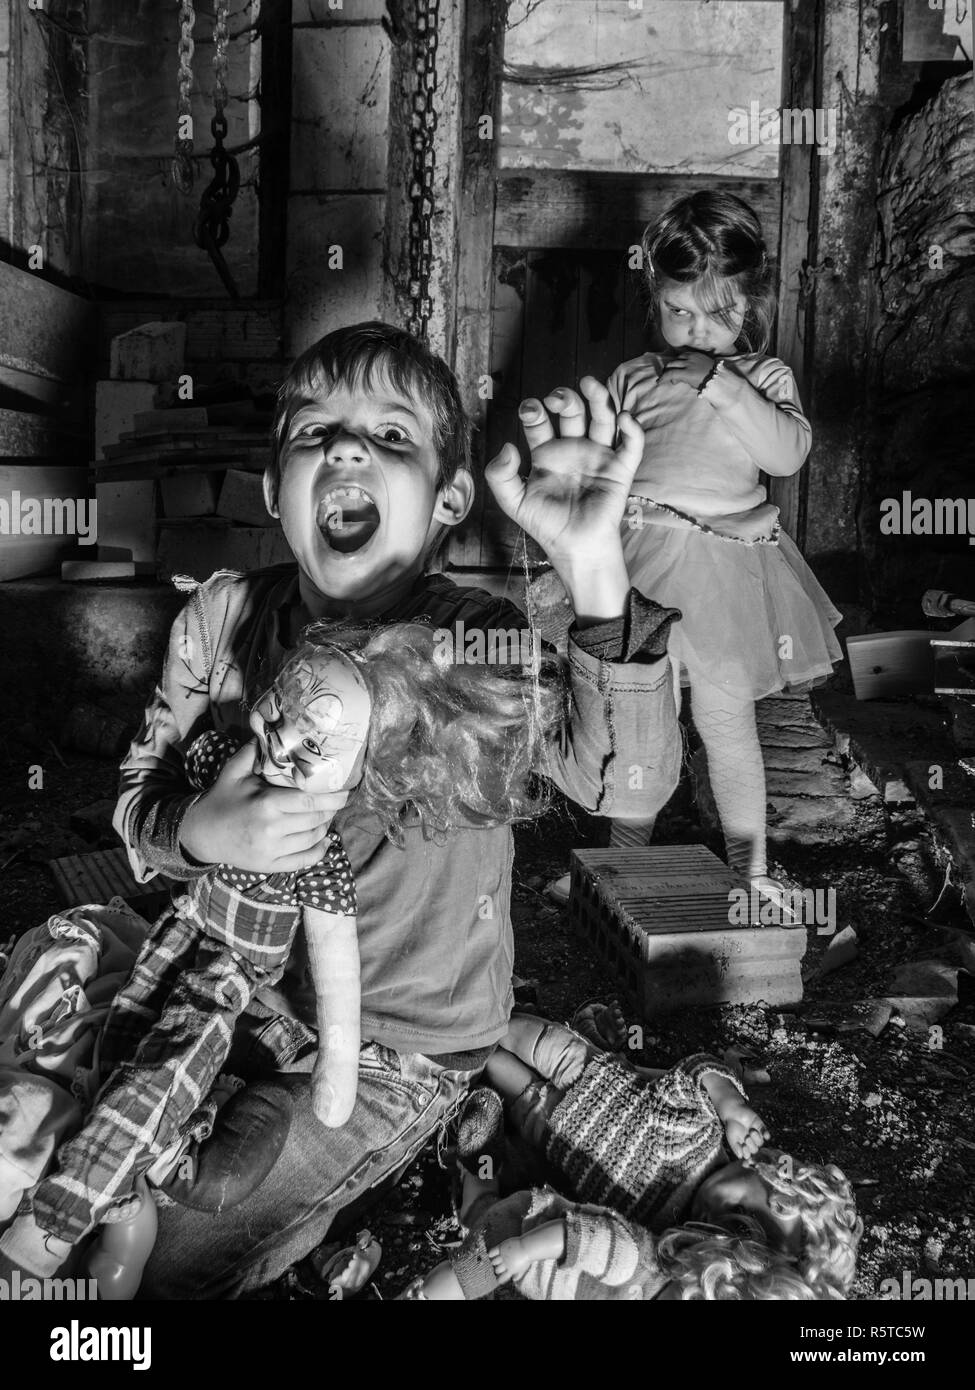 Gruselige Kinder und unheimlichen Puppen in der Scheune Stockfotografie -  Alamy